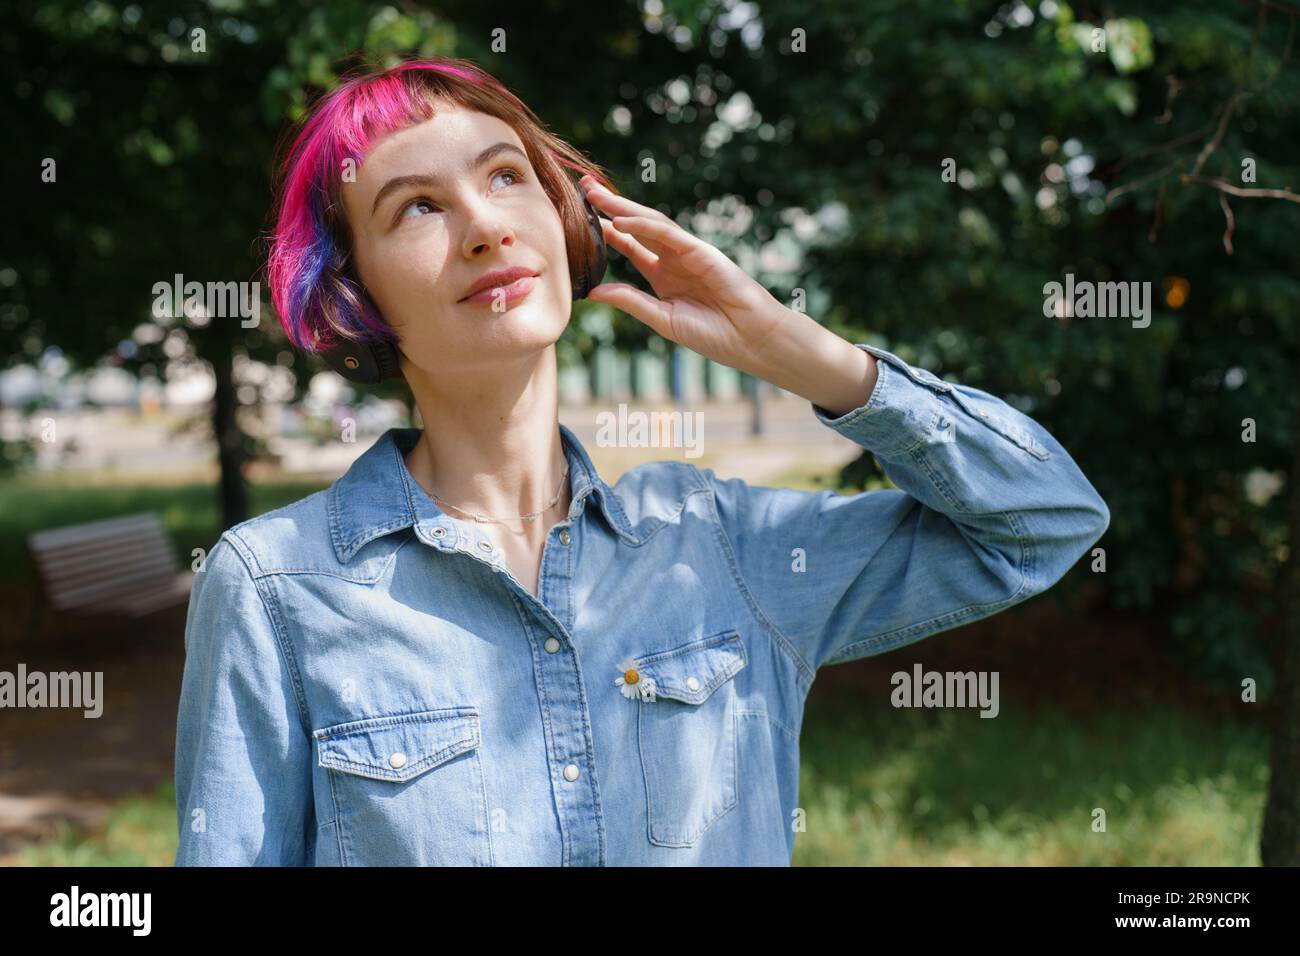 Ein Mädchen mit pinkfarbenen Haaren und Kopfhörern hört im Sommer im Park Musik Stockfoto